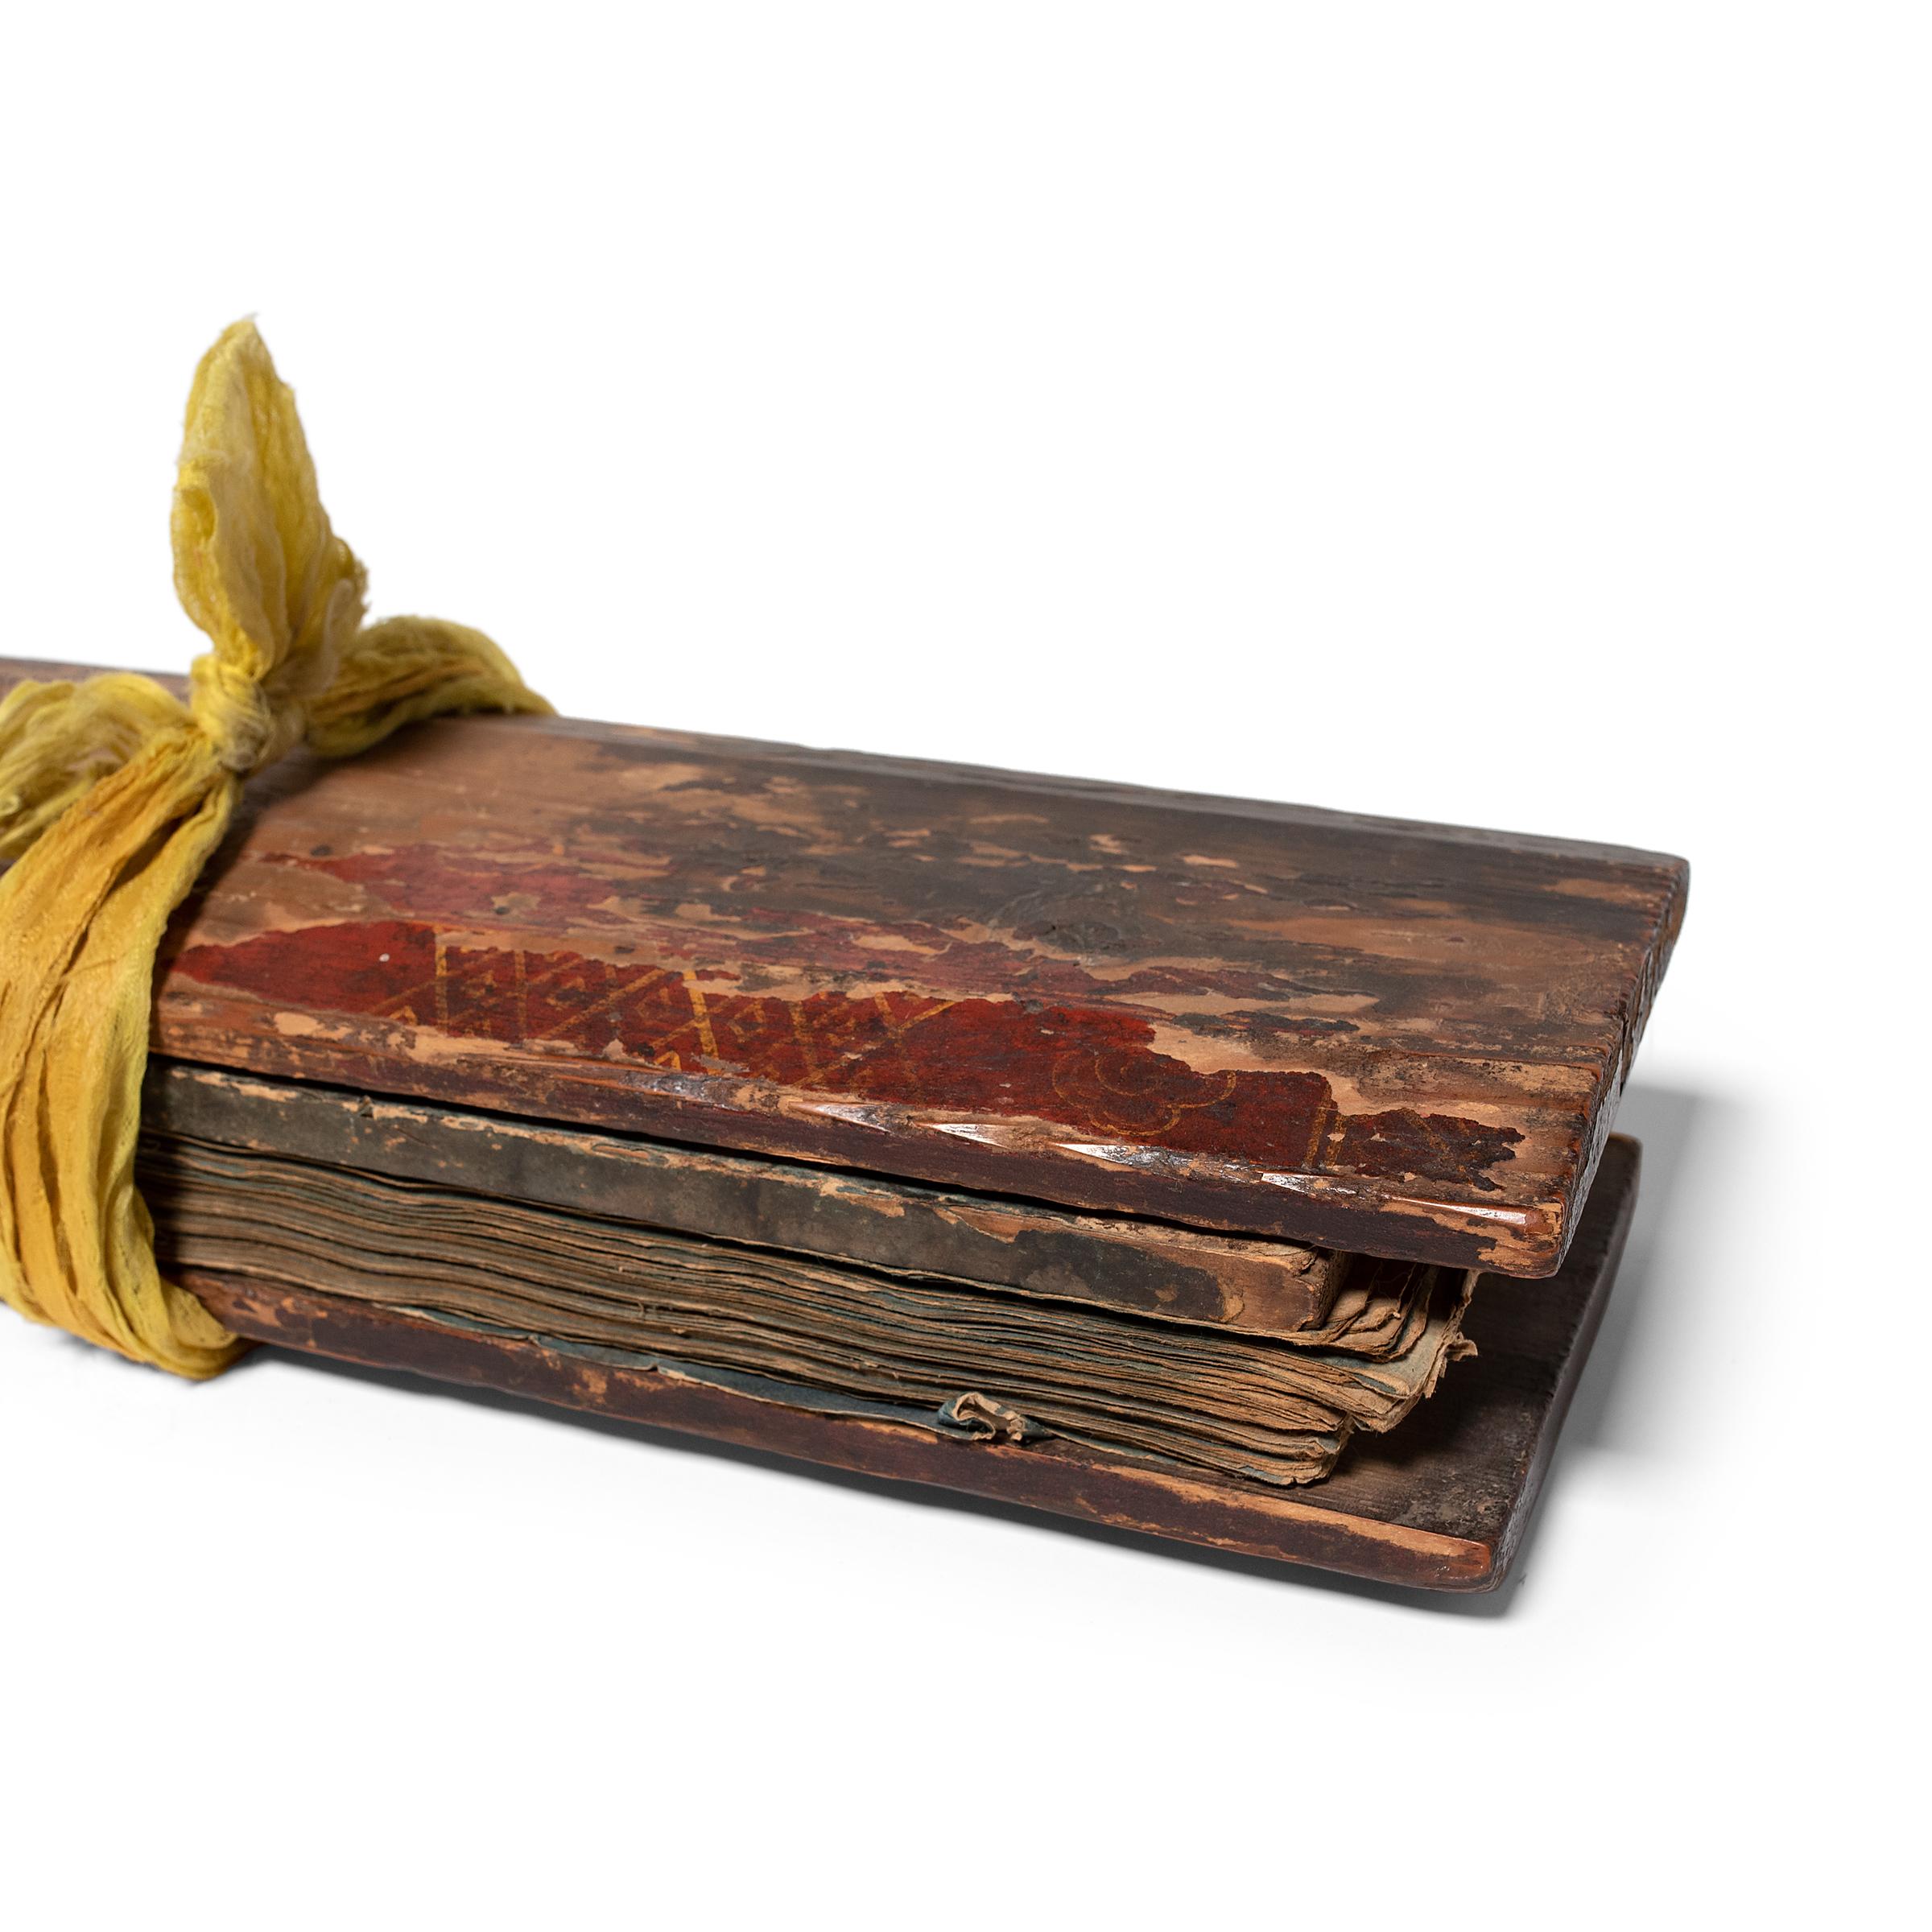 Wood Tibetan Manuscript Prayer Book, c. 1850